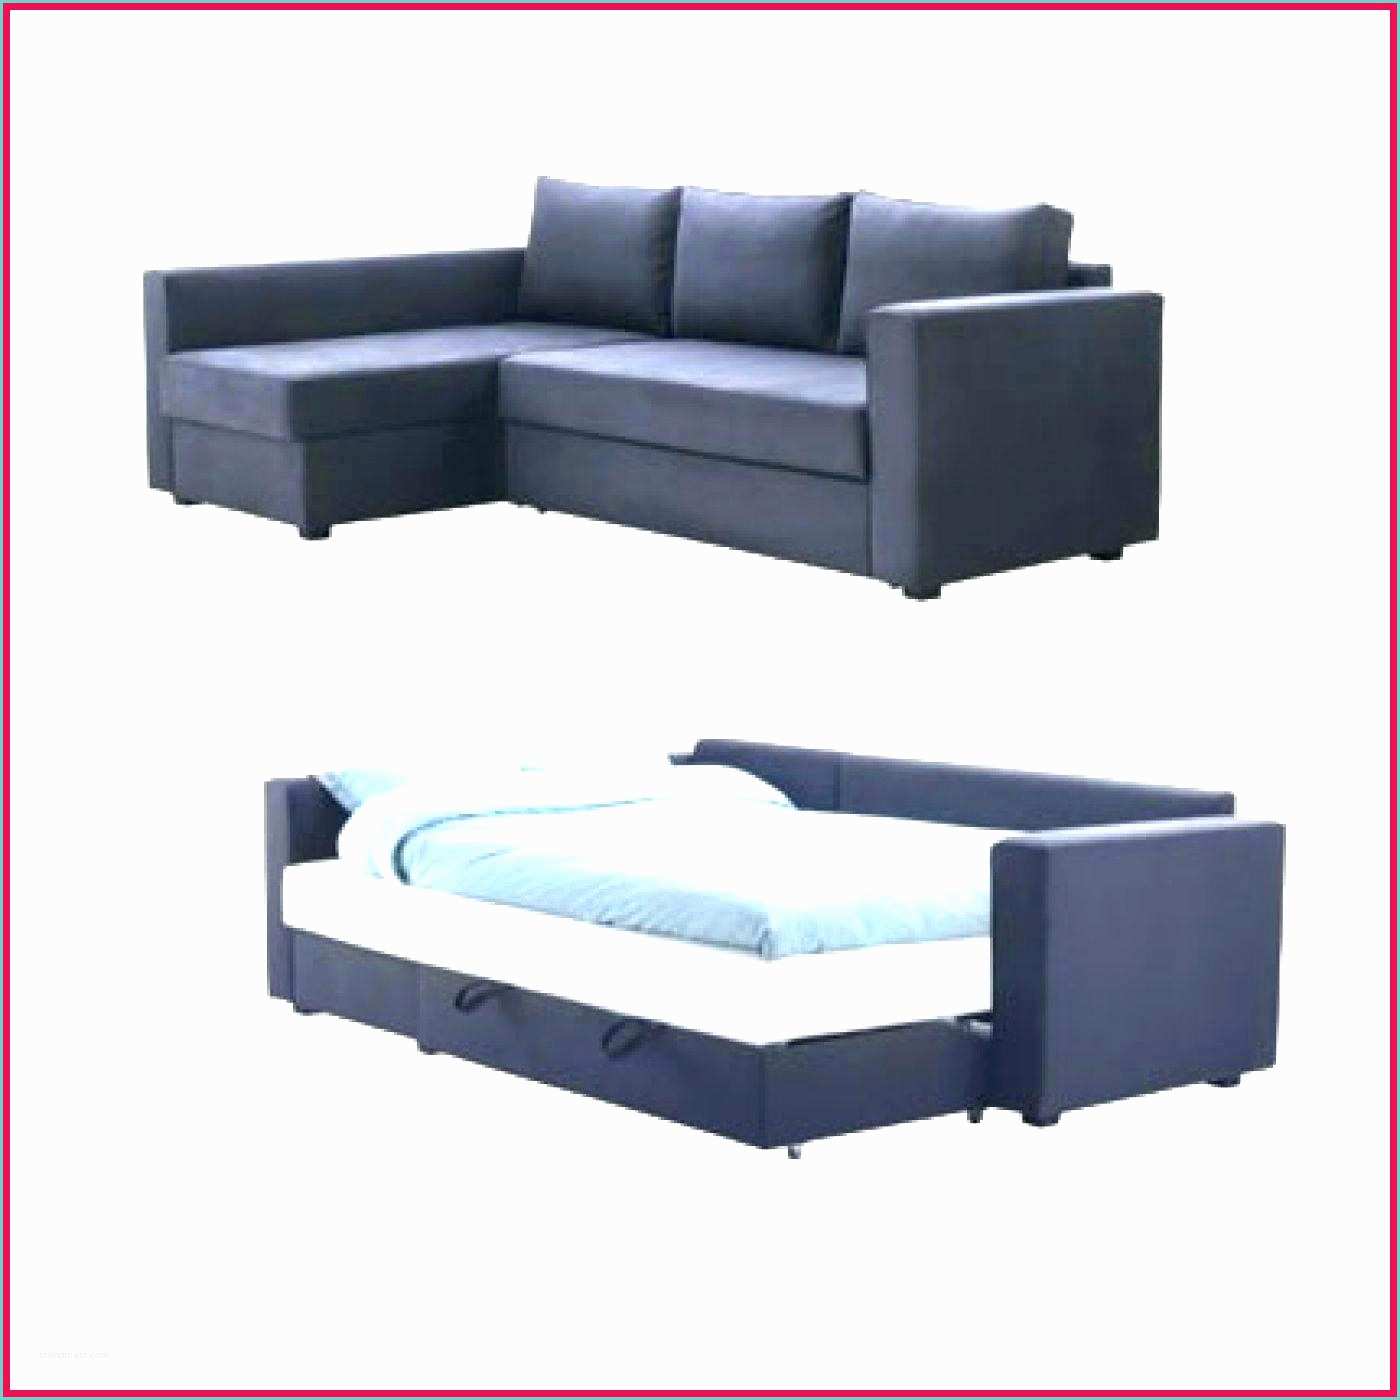 Dimension Dun Clic Clac Standard Un Clic Clac Simple Lime Green Seater Clic Clac sofa Bed